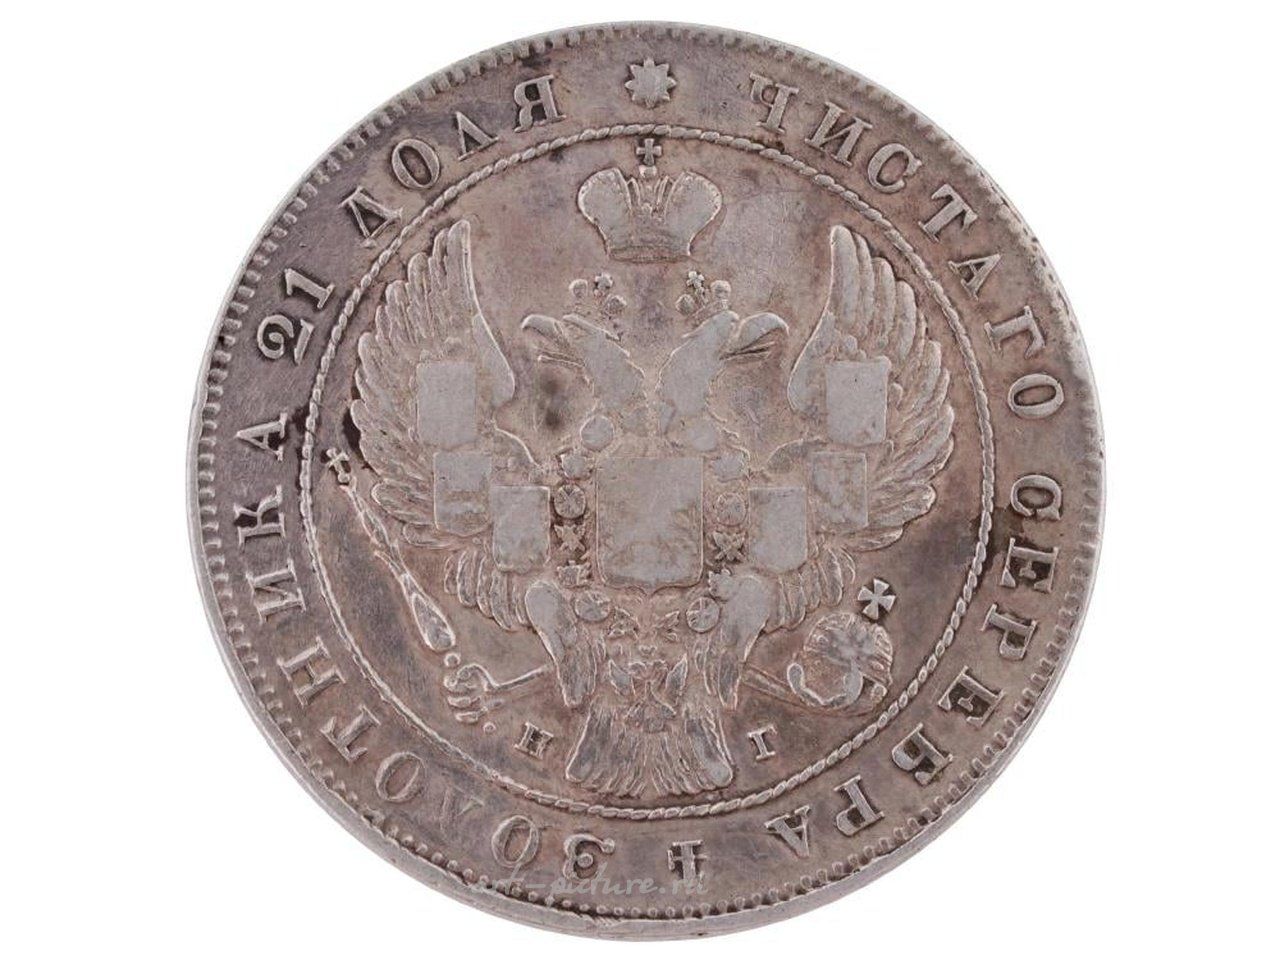 Русское серебро , Антикварная монета Российской империи 1899 года номиналом 10 рублей из золота